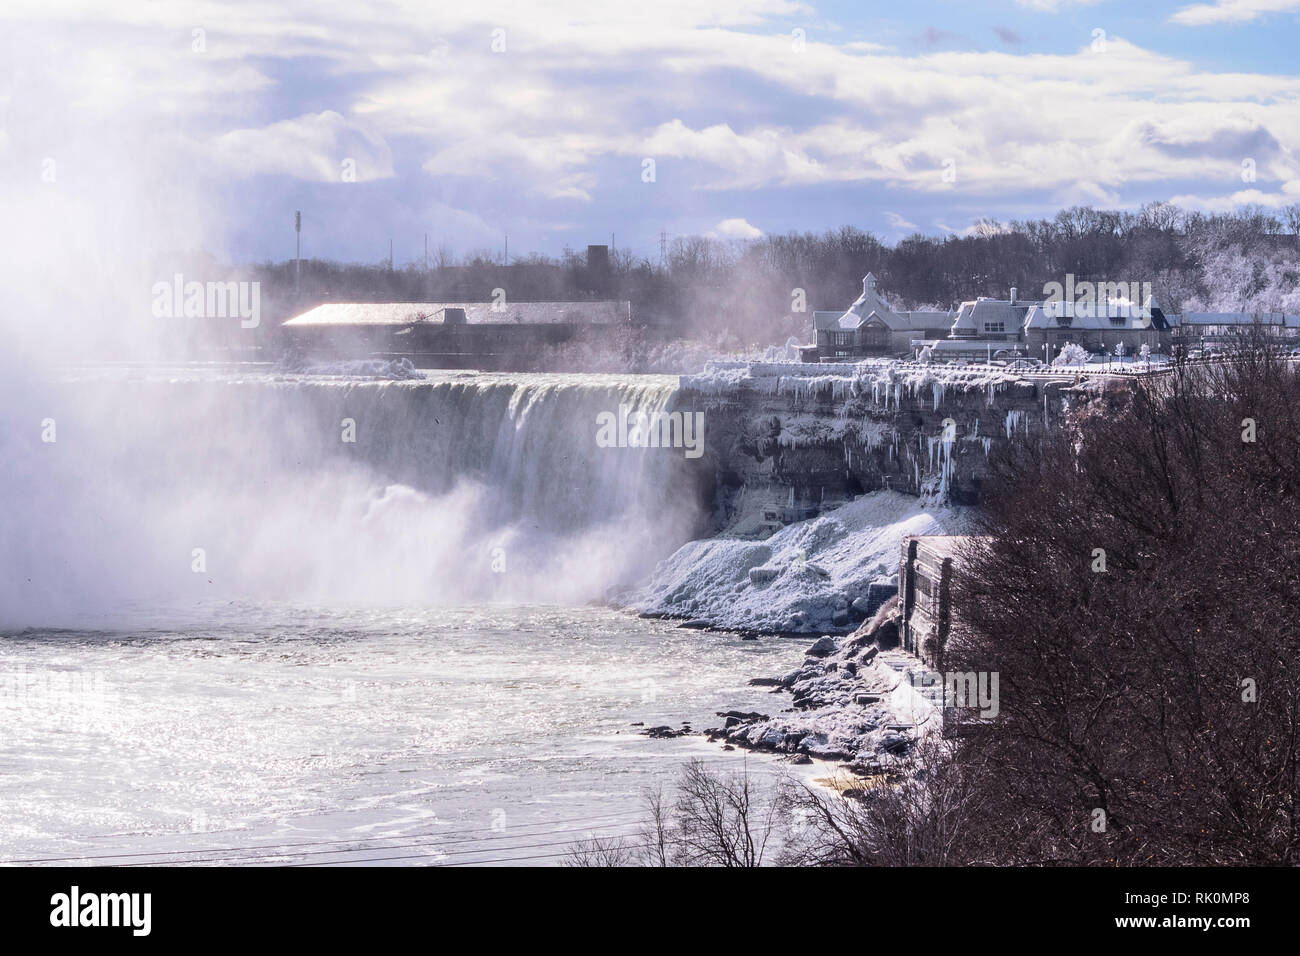 Cascate del Niagara in Canada Foto Stock